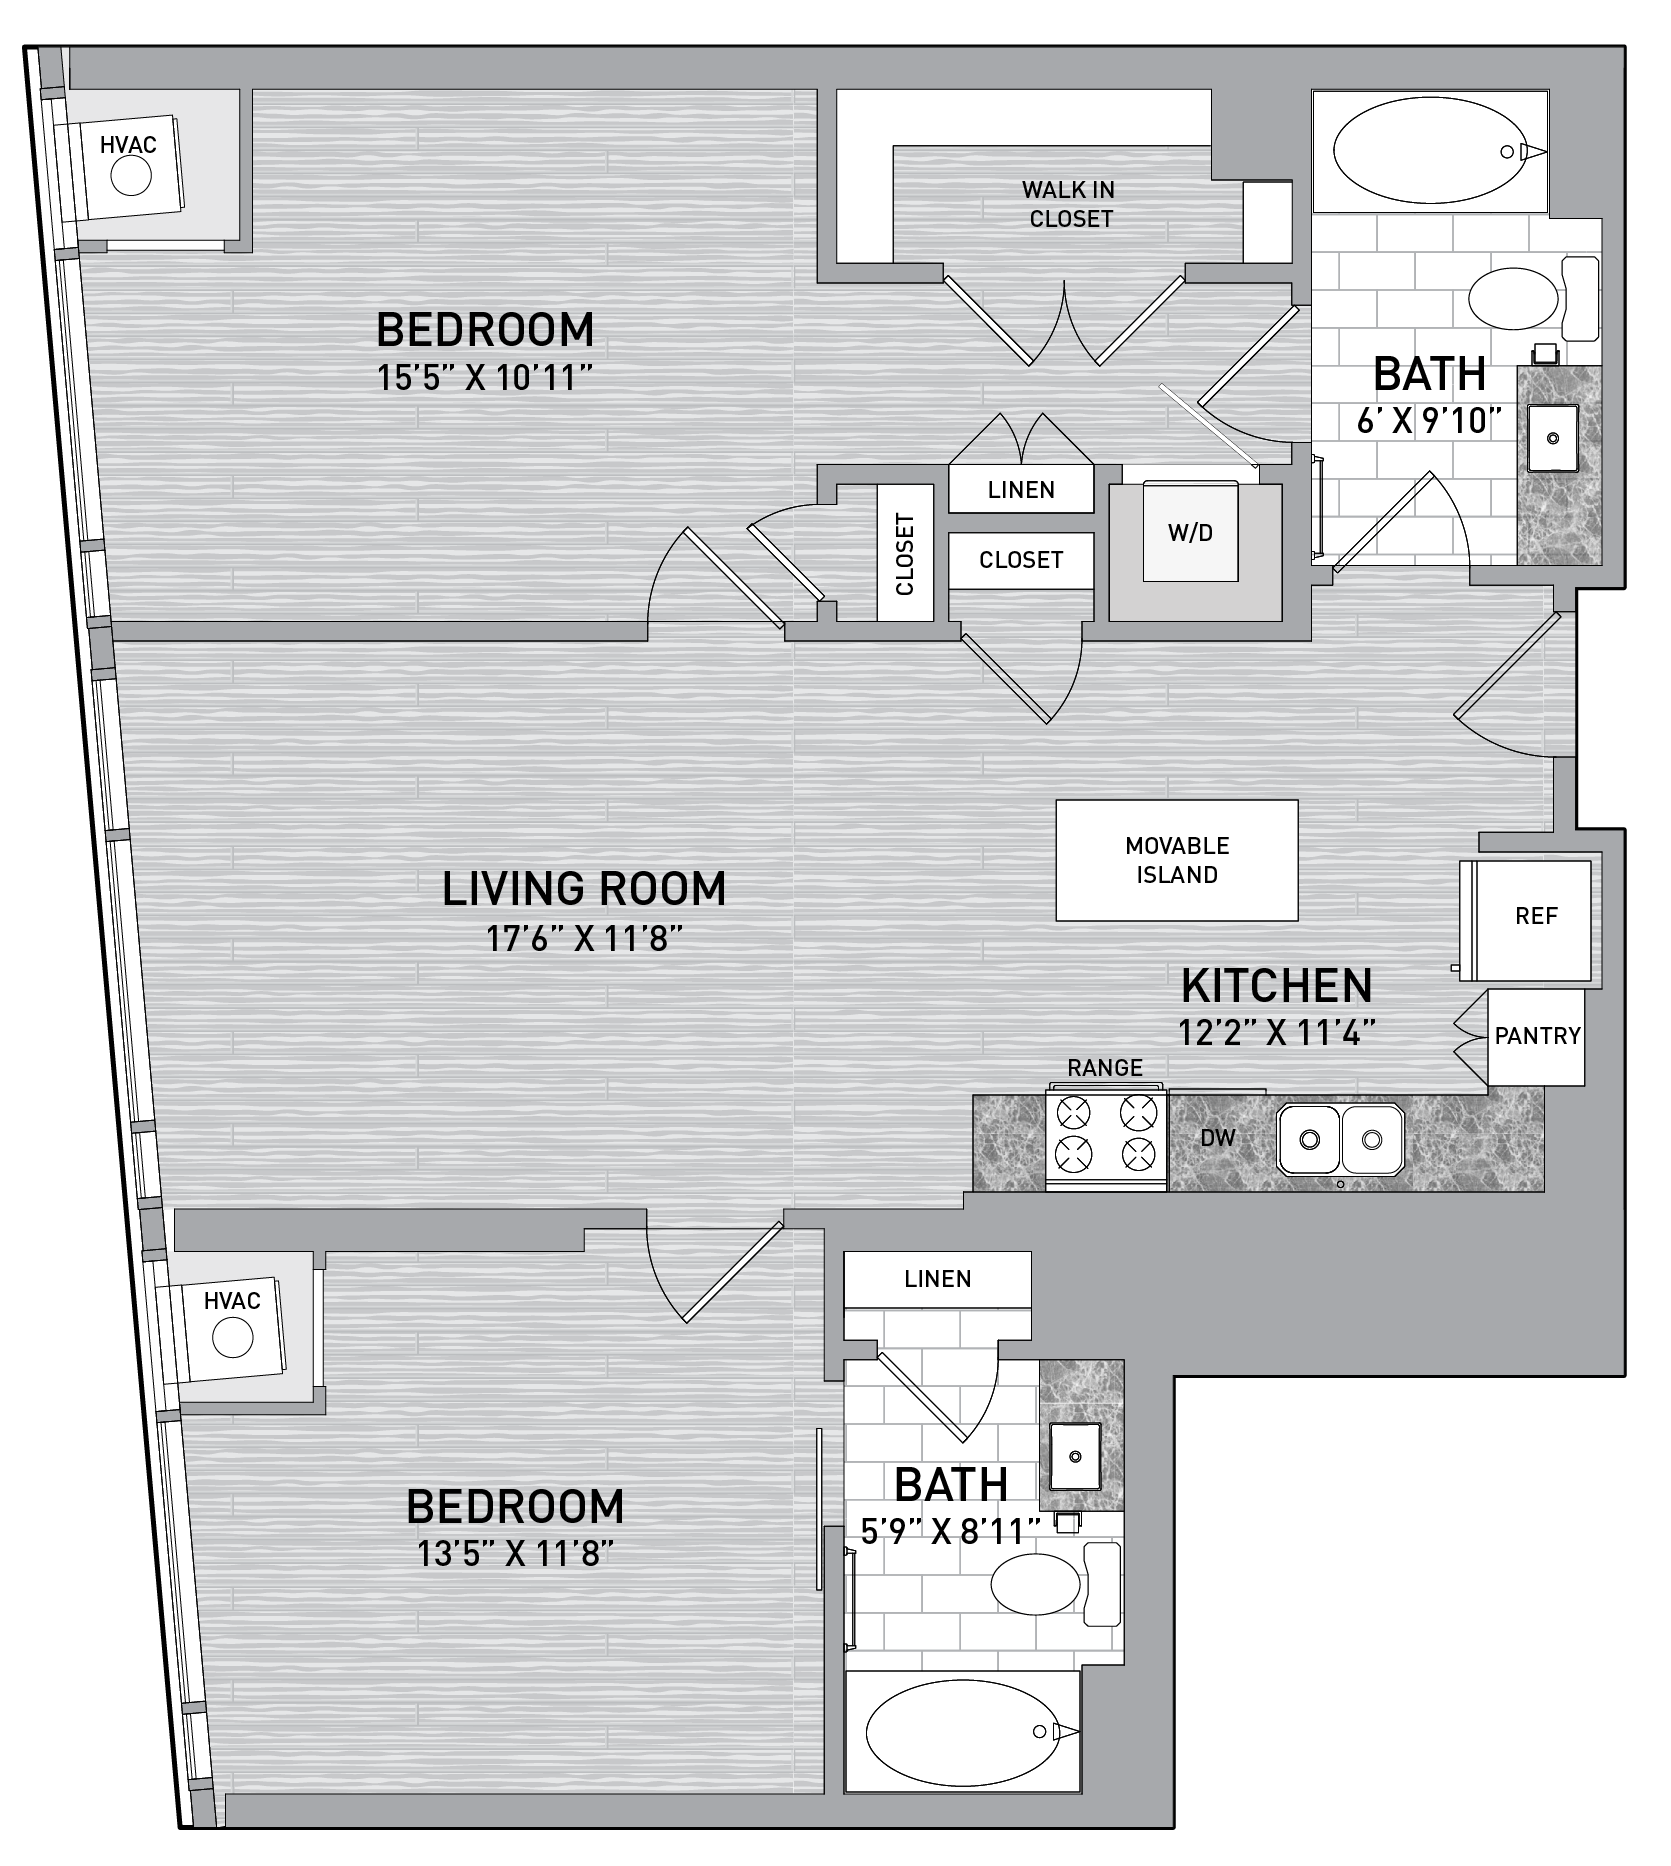 floorplan image of unit id 0904